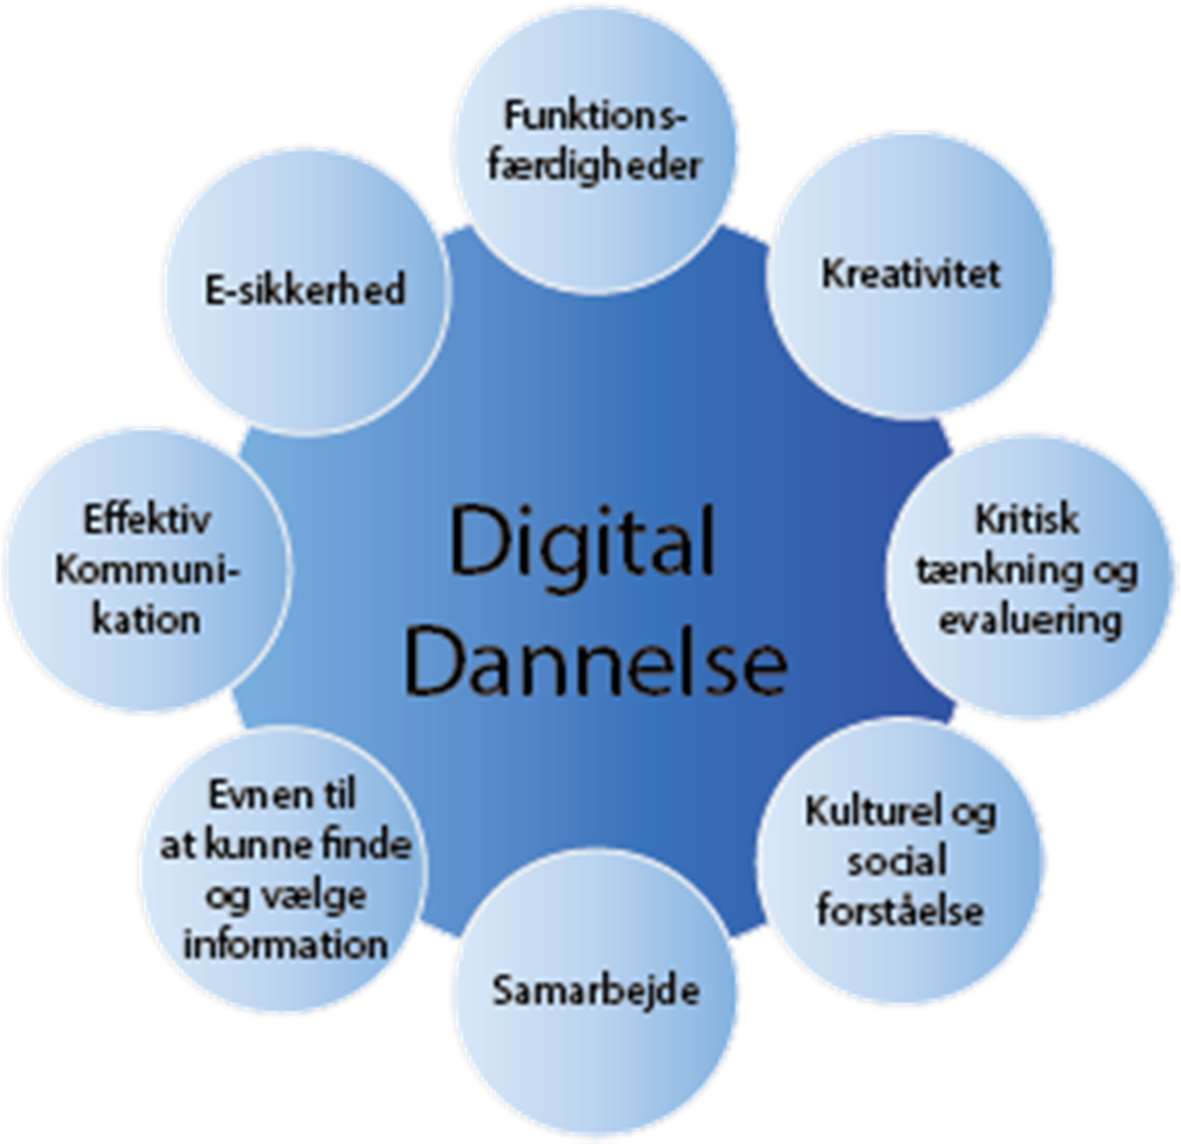 Digital dannelse Der findes flere forskellige definitioner af digital dannelse, men fælles for dem er, at de handler om at kunne begå sig socialt, etisk og kritisk i en digital verden.